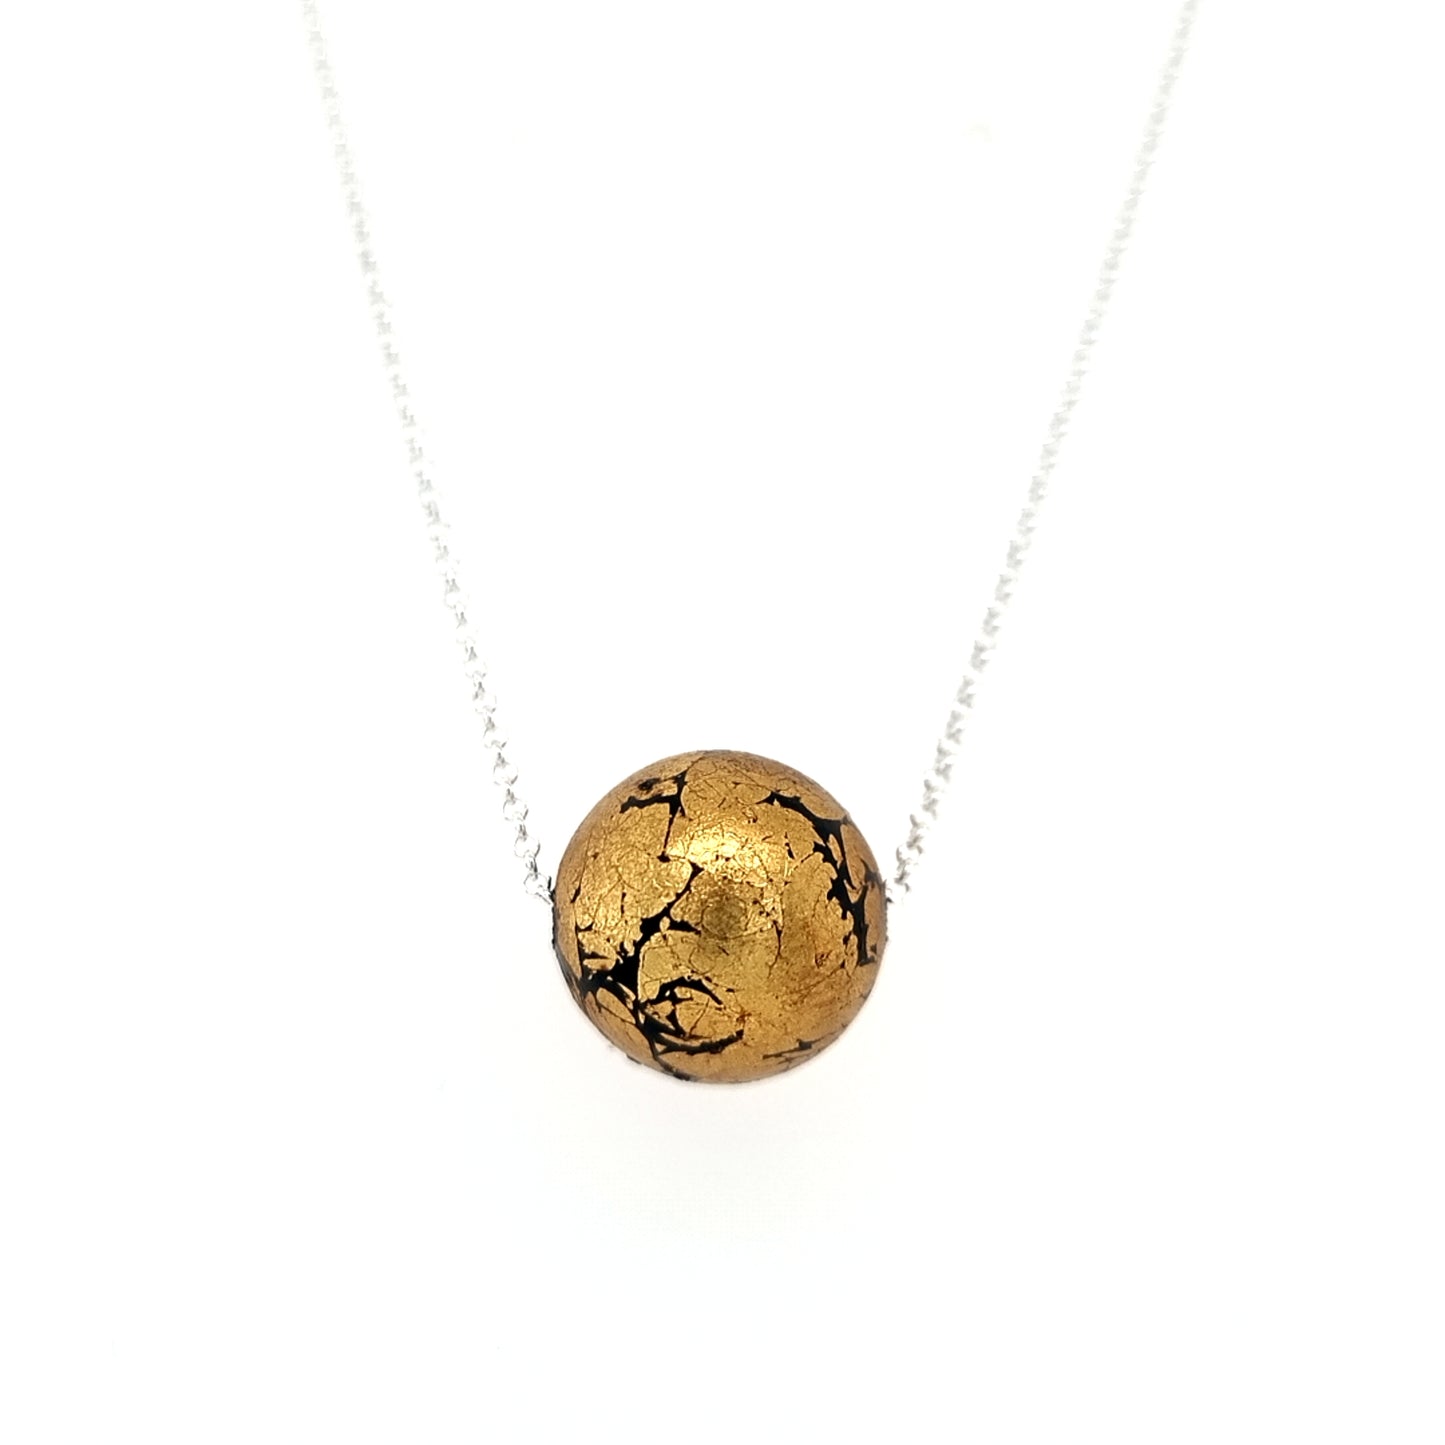 Golden Globe Pendant with 22k gold leaf